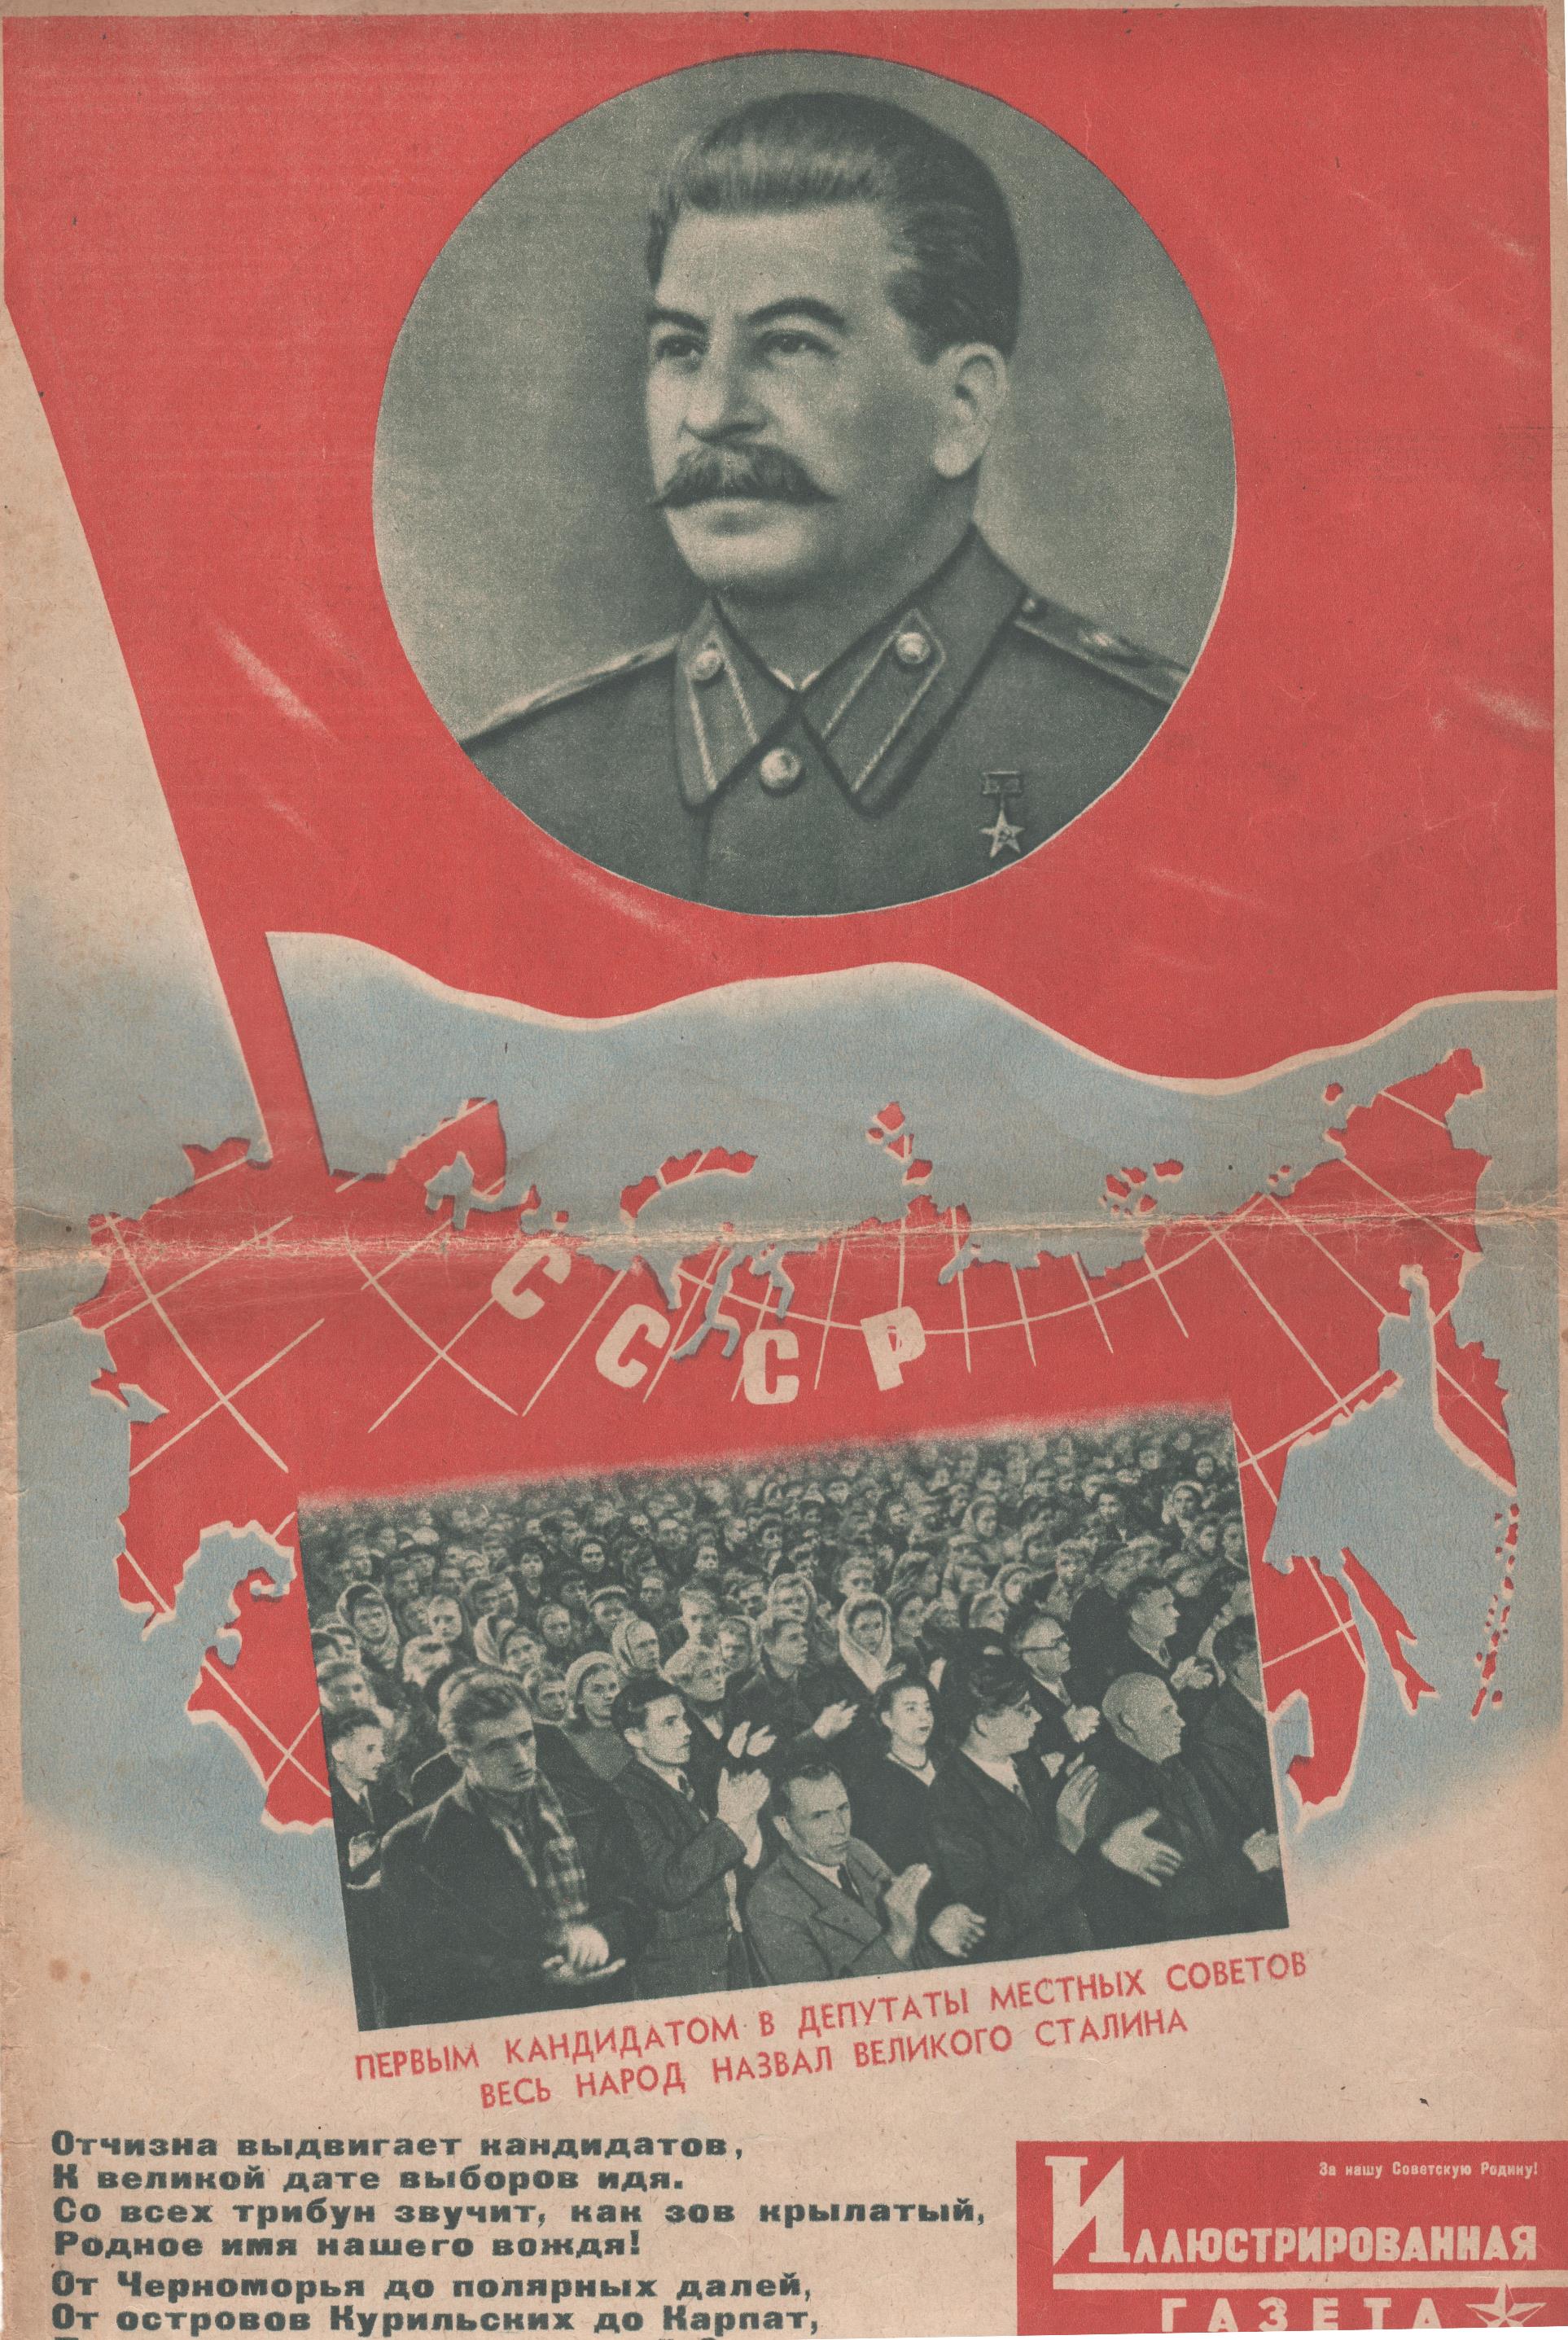 	Журнал "Красноармейская иллюстрированная газета". № 23 (грудень). 1947